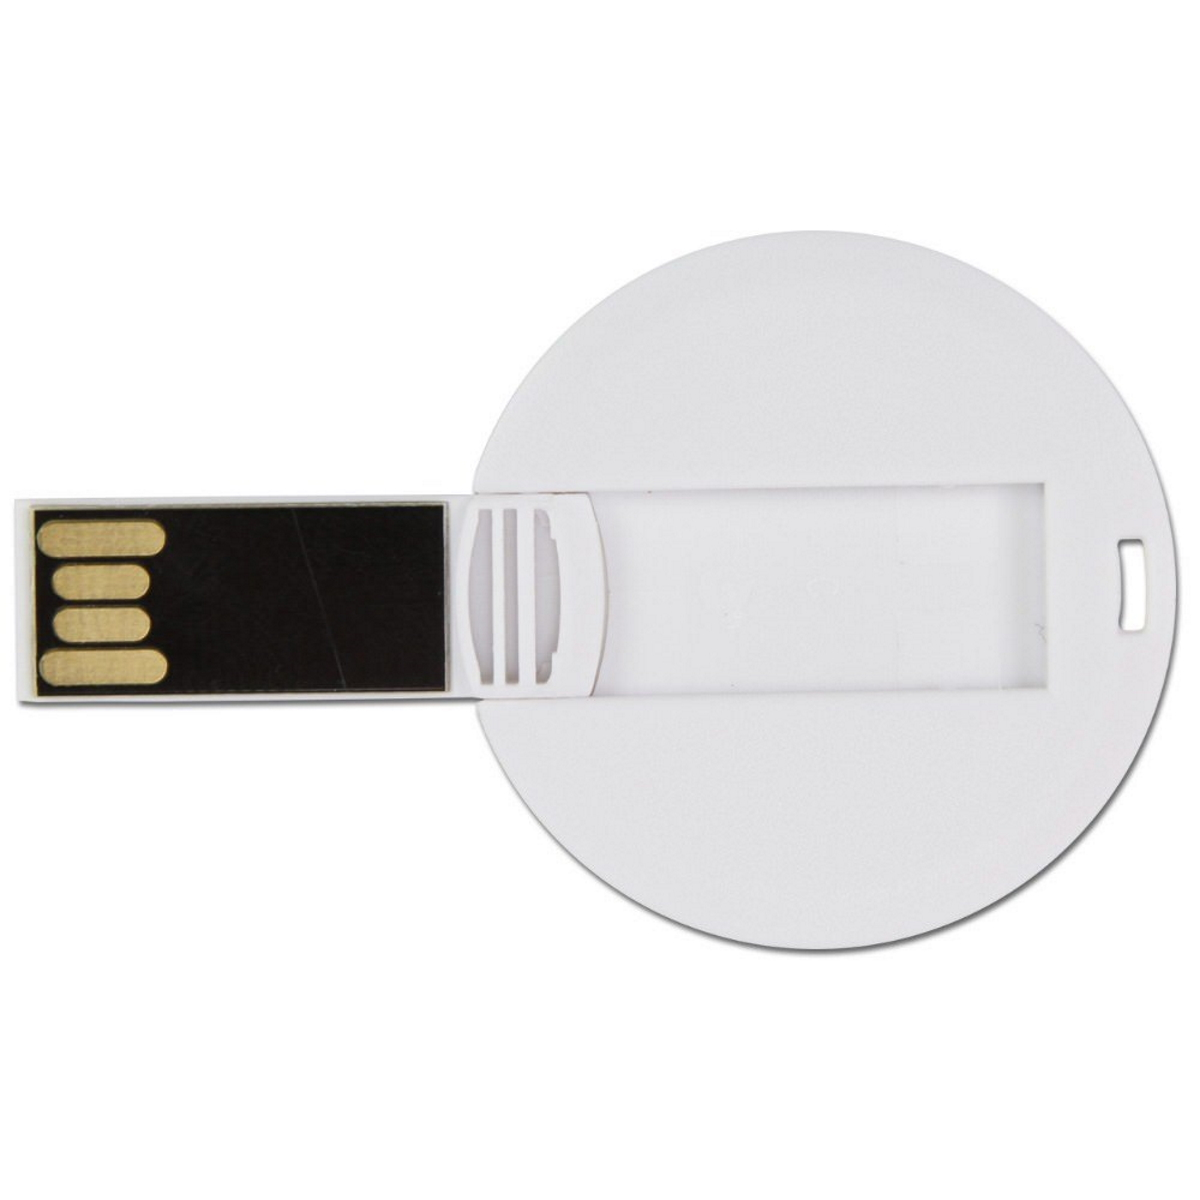 ® GB) USB-Stick 8 DISC GERMANY USB (Weiß,